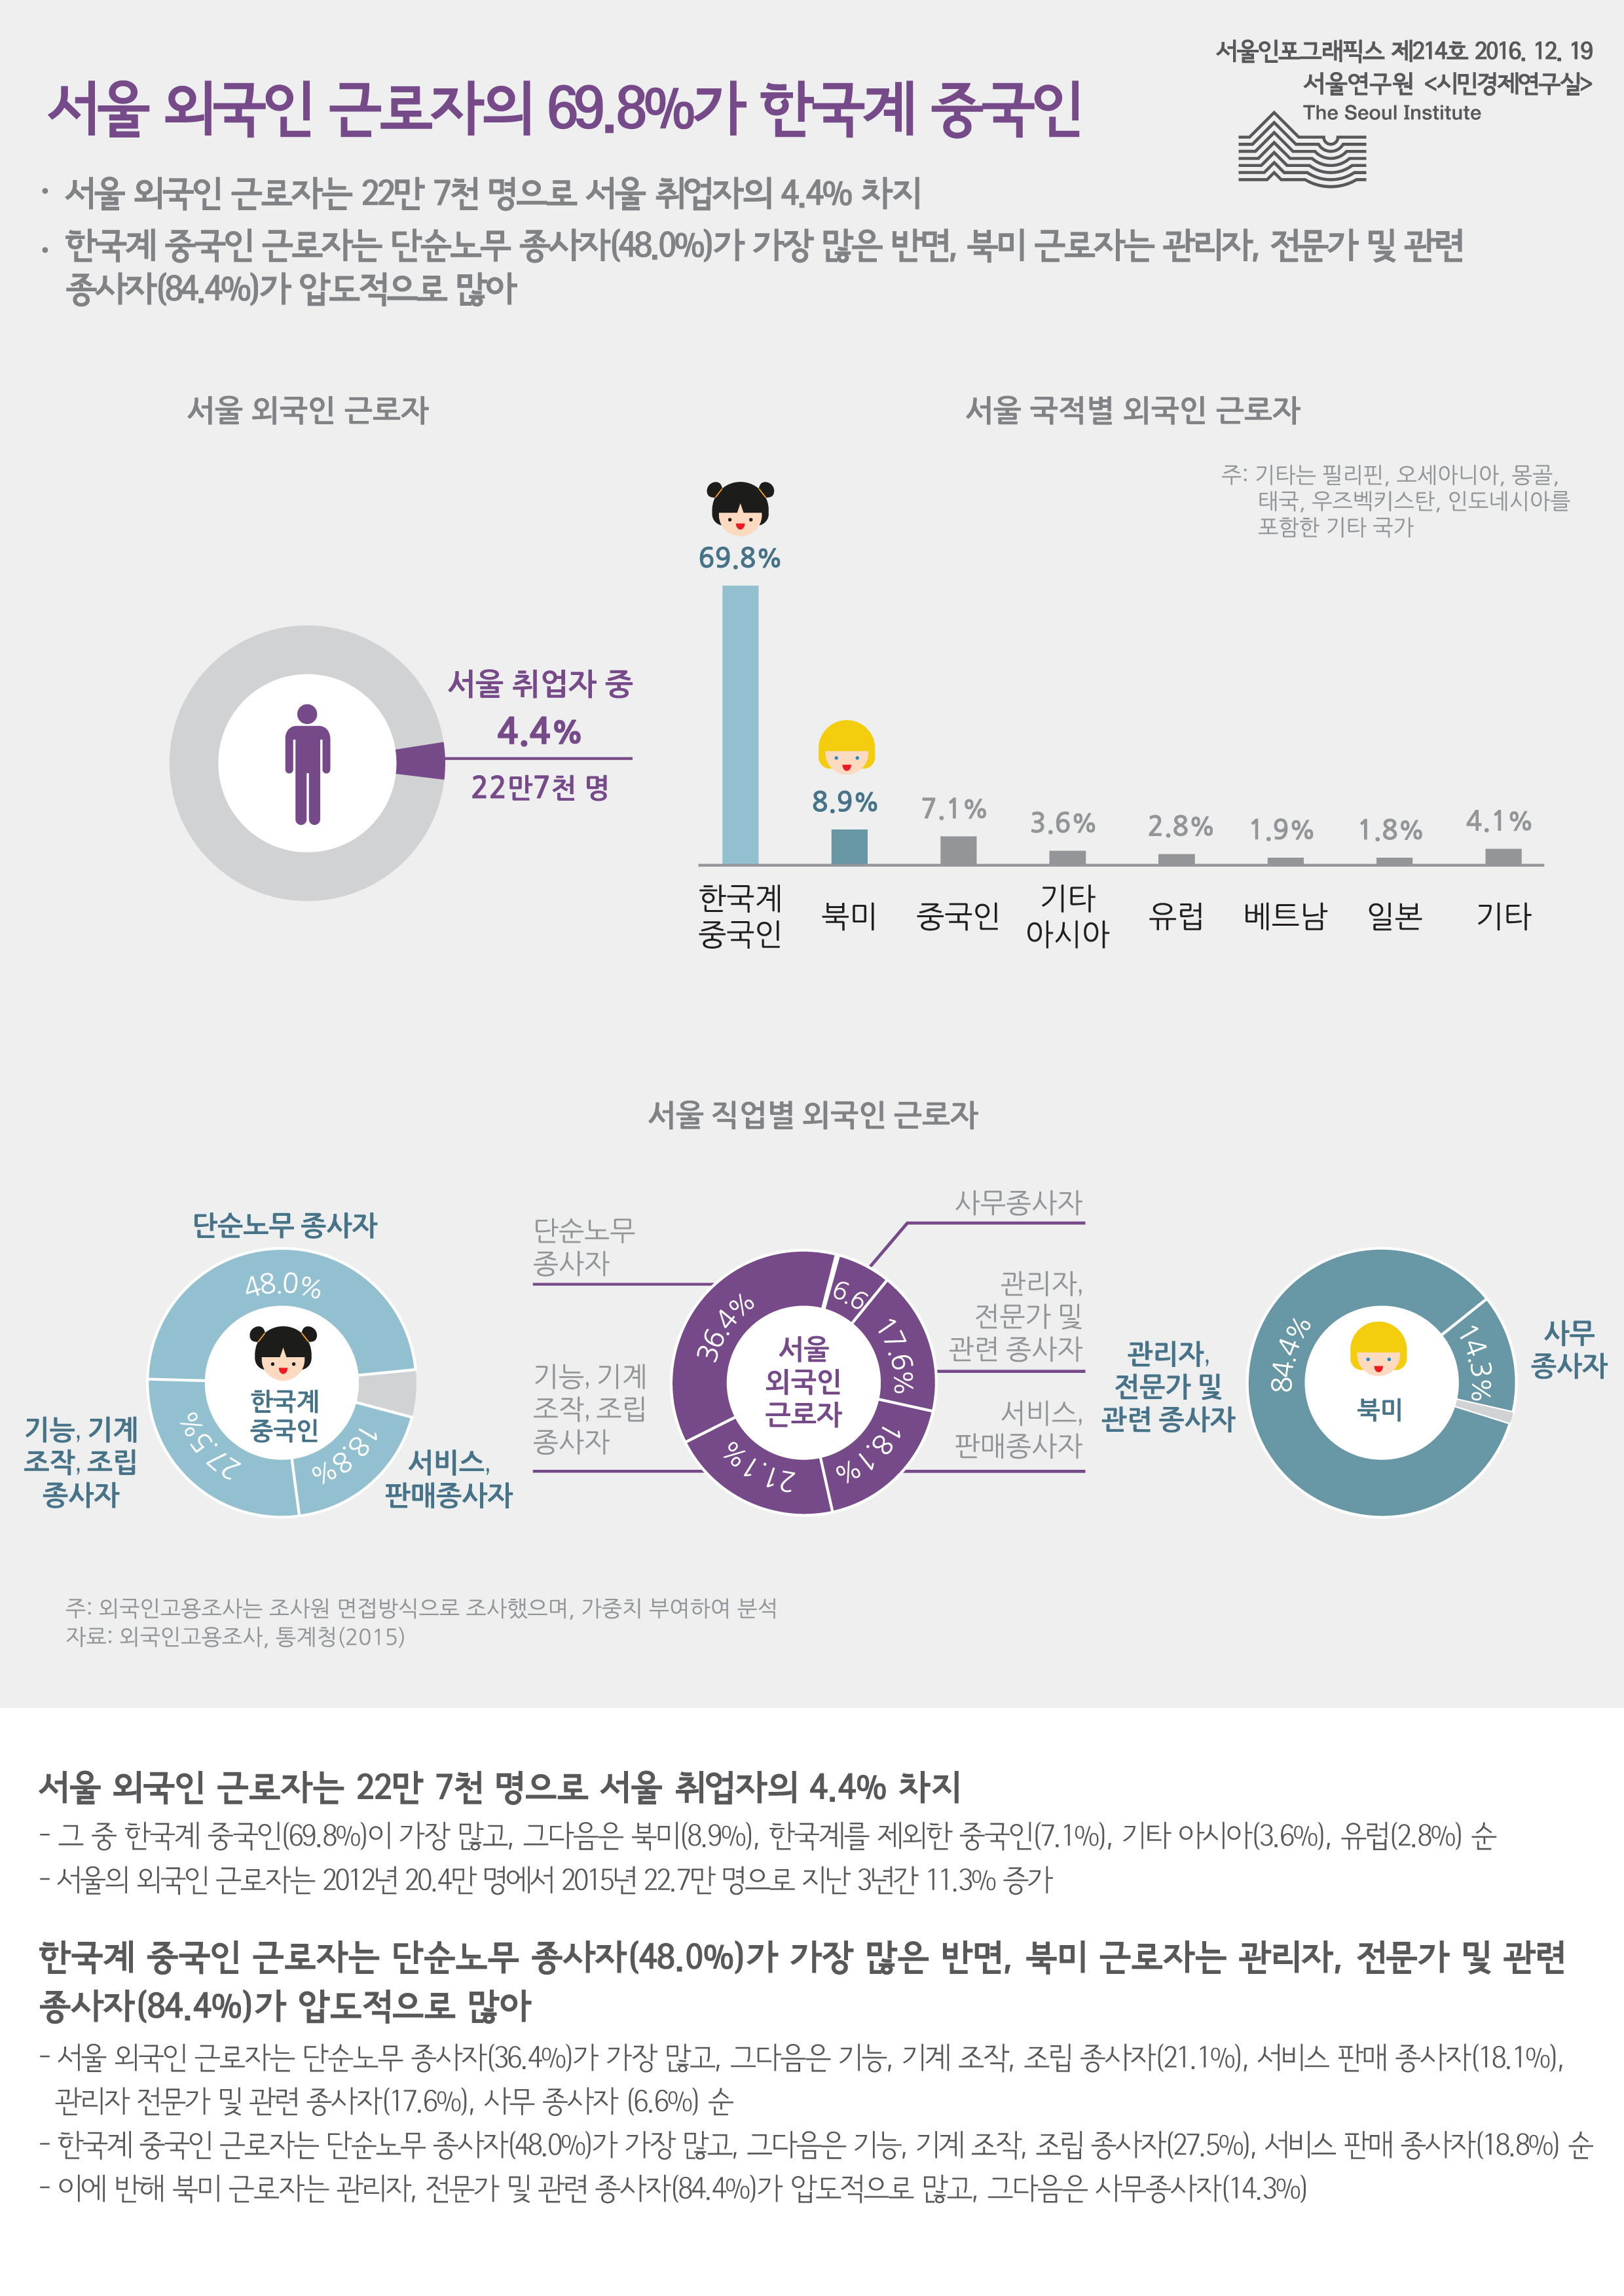 서울 외국인 근로자의 69.8%가 한국계 중국인 서울인포그래픽스 제214호 2016년 12월 19일 서울 외국인 근로자는 22만 7천 명으로 서울 취업자의 4.4% 차지. 한국계 중국인 근로자는 단순노무 종사자(48.0%)가 가장 많은 반면, 북미 근로자는 관리자, 전문가 및 관련 종사자(84.4%)가 압도적으로 많음으로 정리 될 수 있습니다. 인포그래픽으로 제공되는 그래픽은 하단에 표로 자세히 제공됩니다.